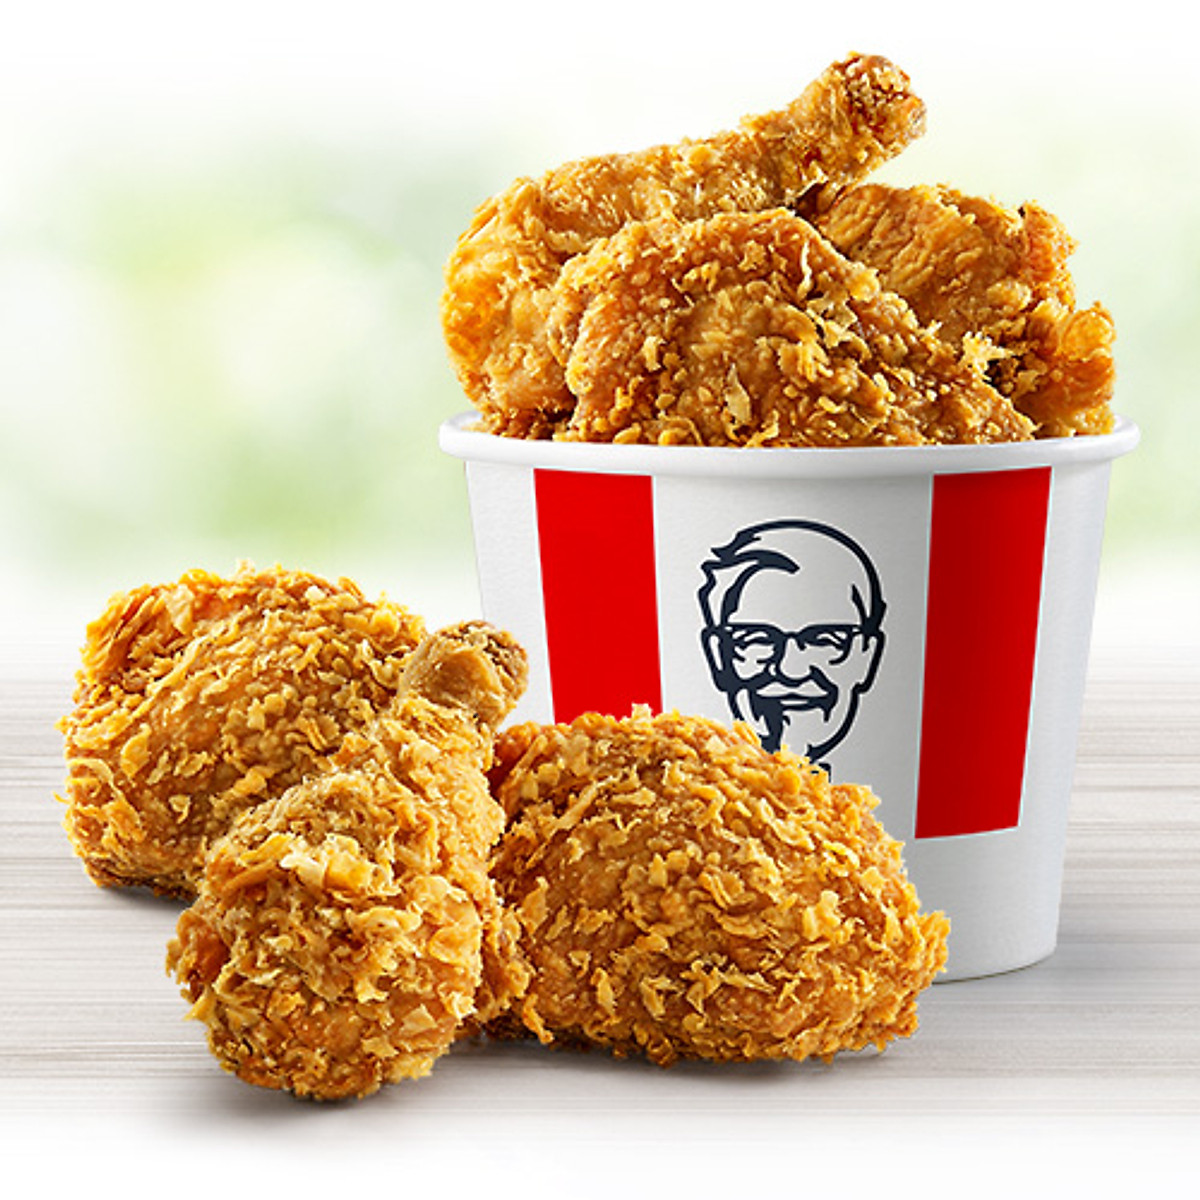 6 Miếng Gà Rán KFC - Đồ chế biến sẵn